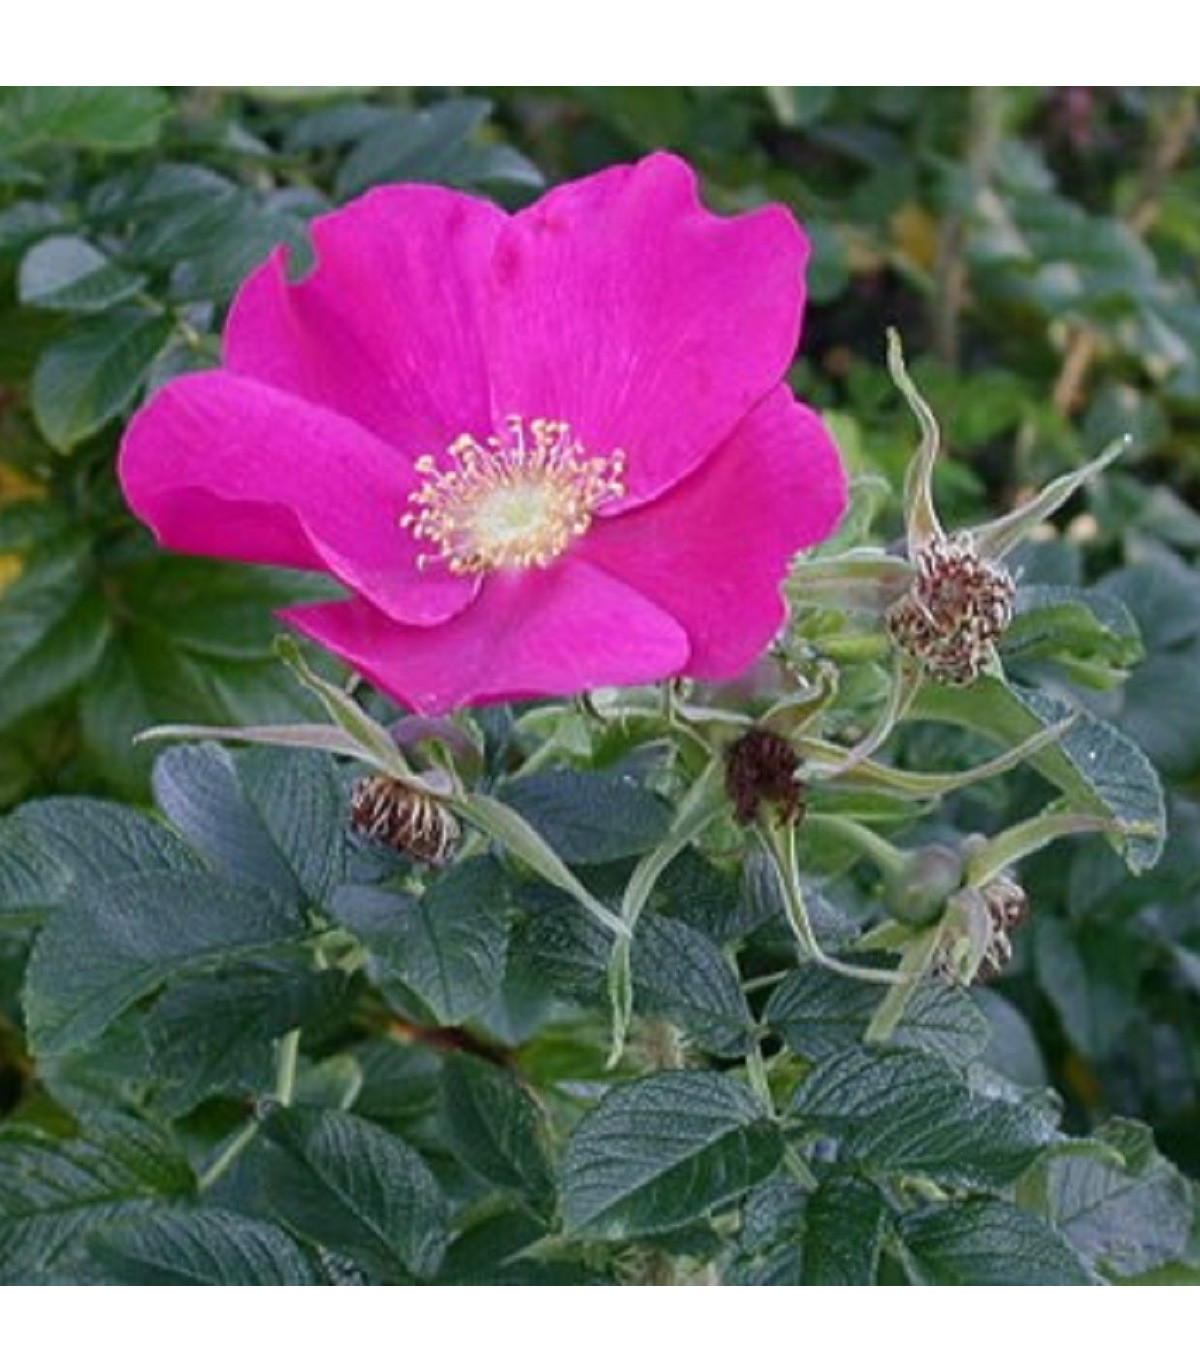 Růže svraskalá - Rosa rugosa - prodej růží - semena